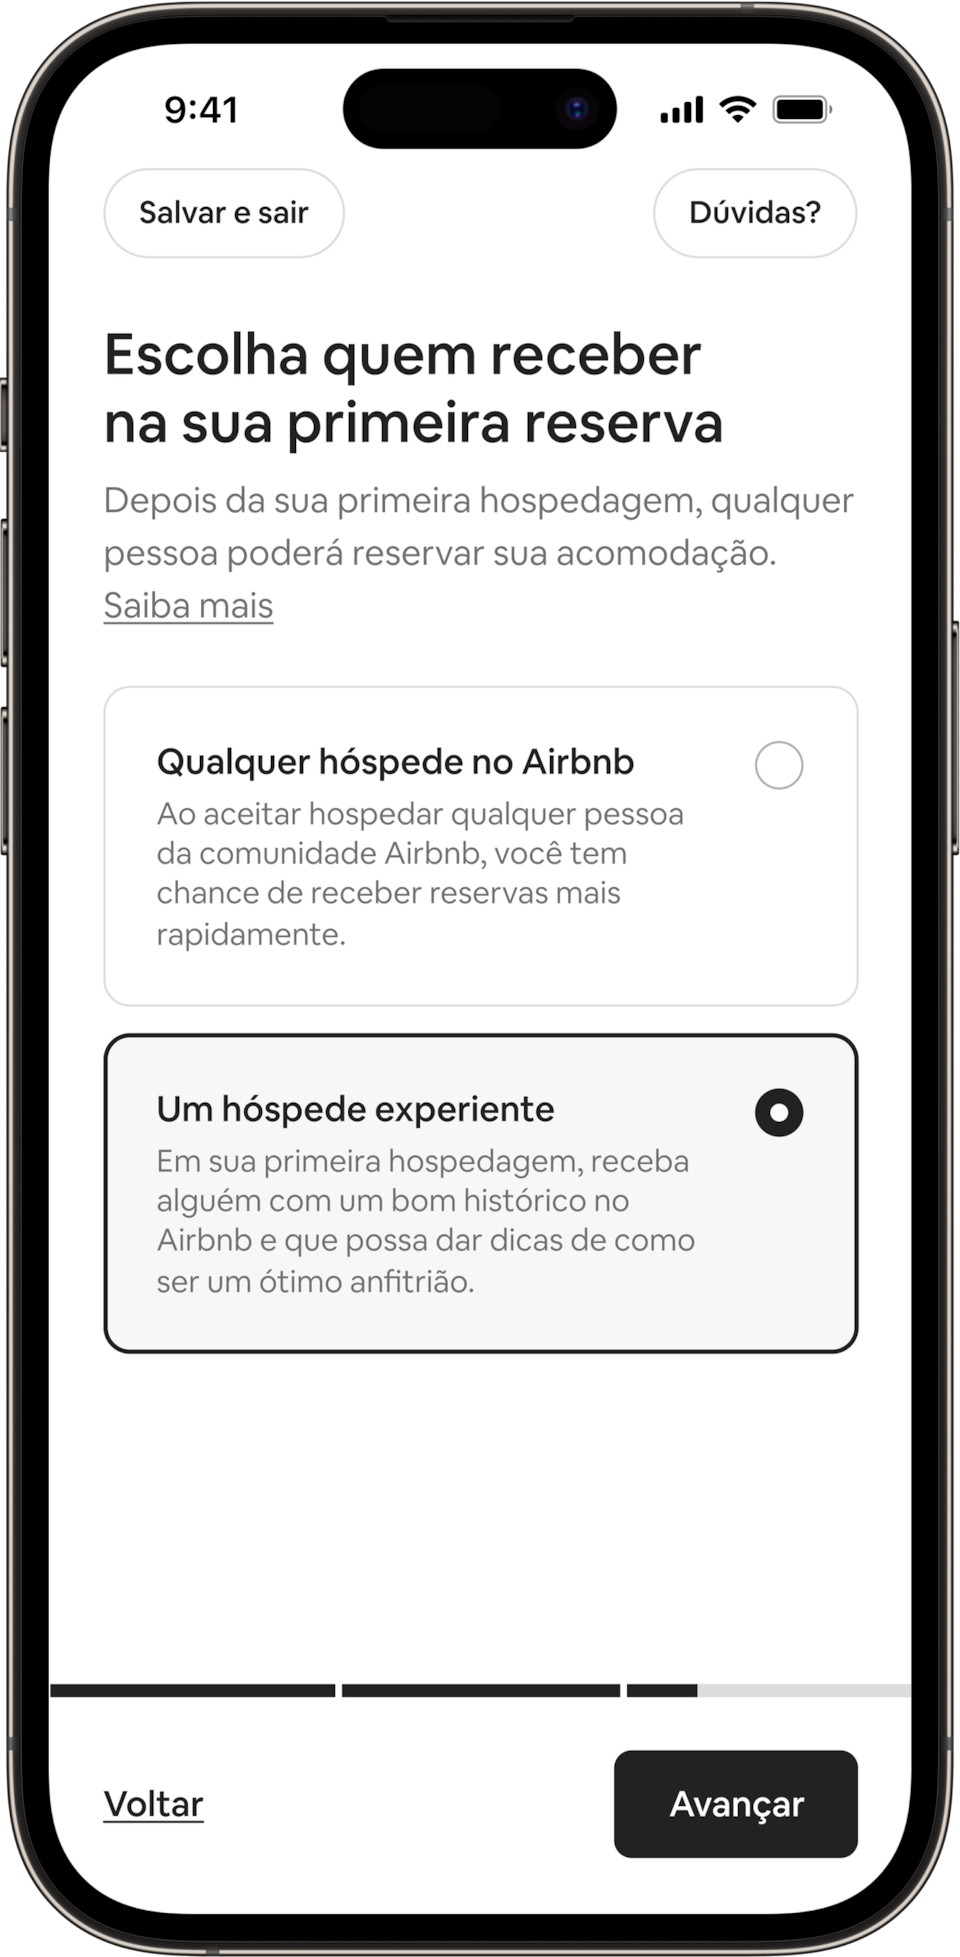 Um celular mostra um título dizendo: Escolha quem receber na sua primeira reserva. Os anfitriões podem optar por receber qualquer hóspede do Airbnb ou um hóspede experiente. O botão "Hóspede experiente" foi selecionado.